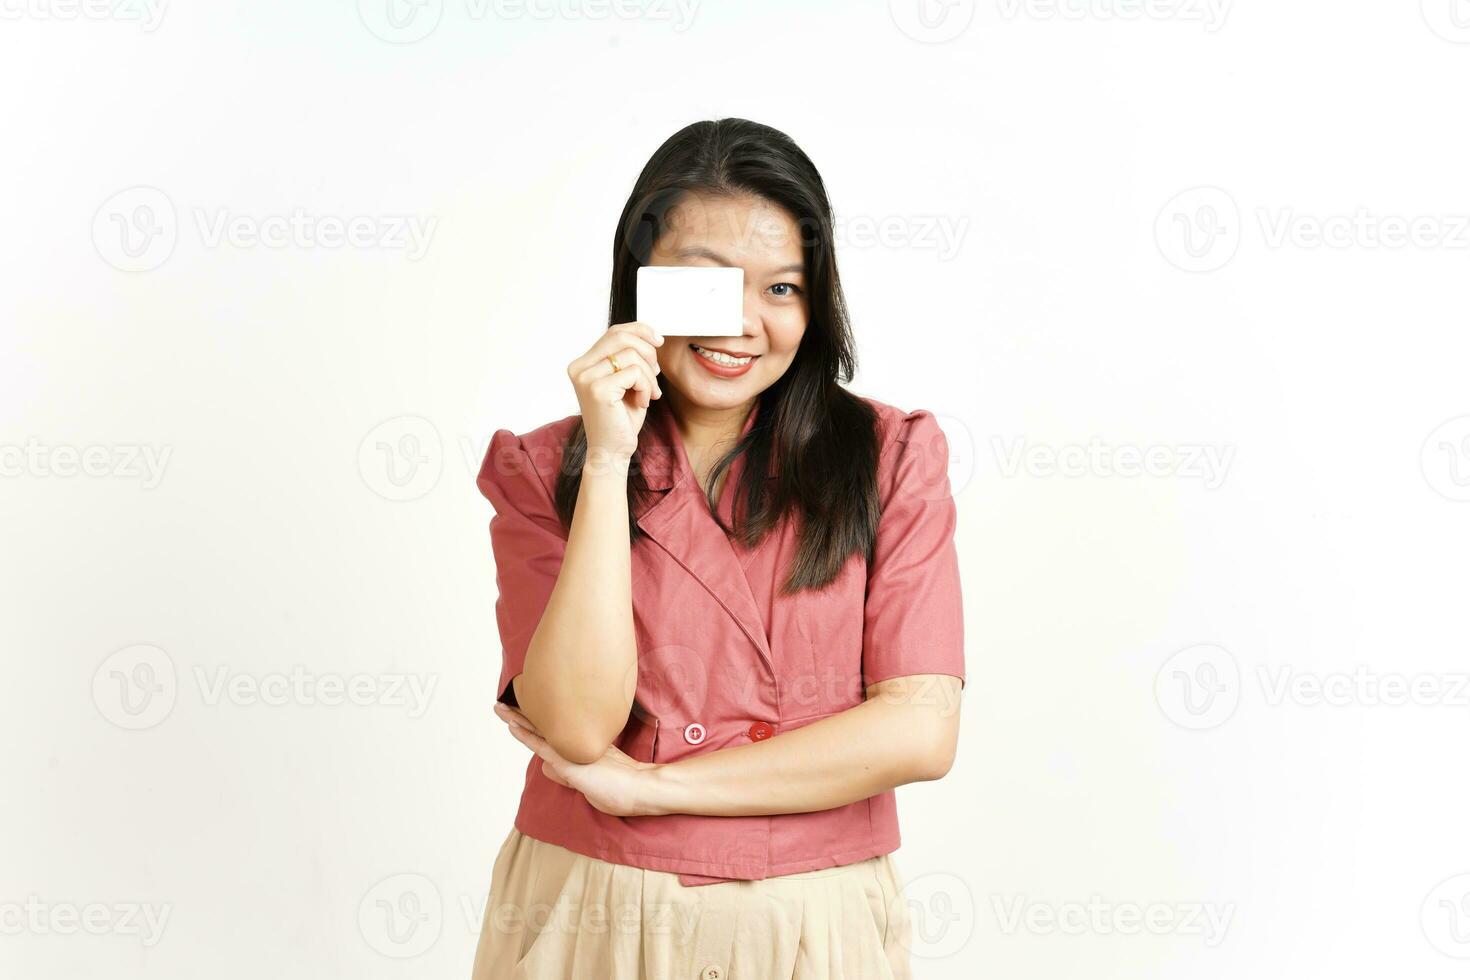 tenant et montrant une carte de crédit vierge d'une belle femme asiatique isolée sur fond blanc photo